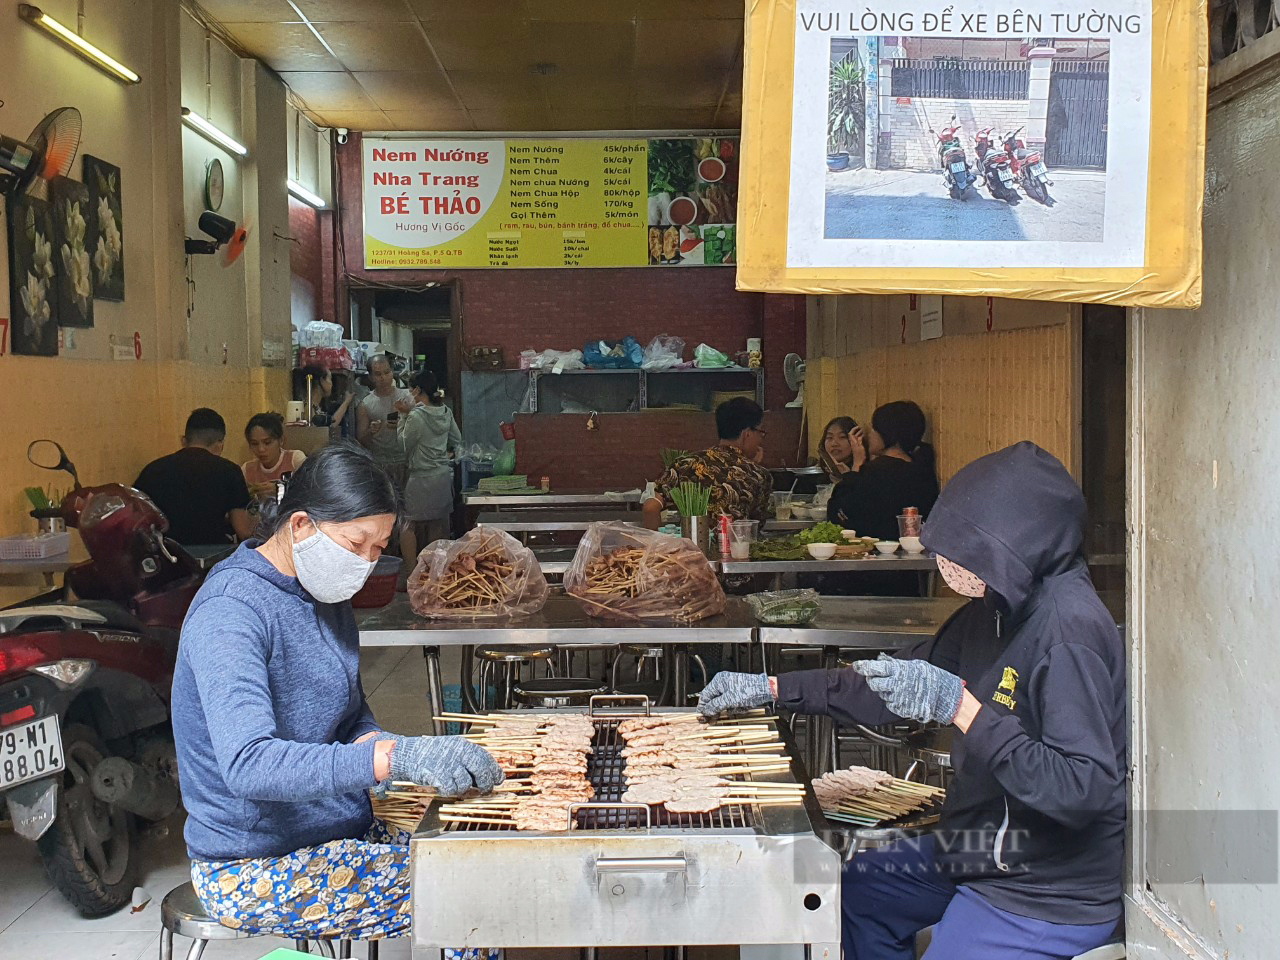 Sài Gòn quán: Nem nướng Nha Trang chính gốc ở Sài Gòn, ăn ở đâu?-3